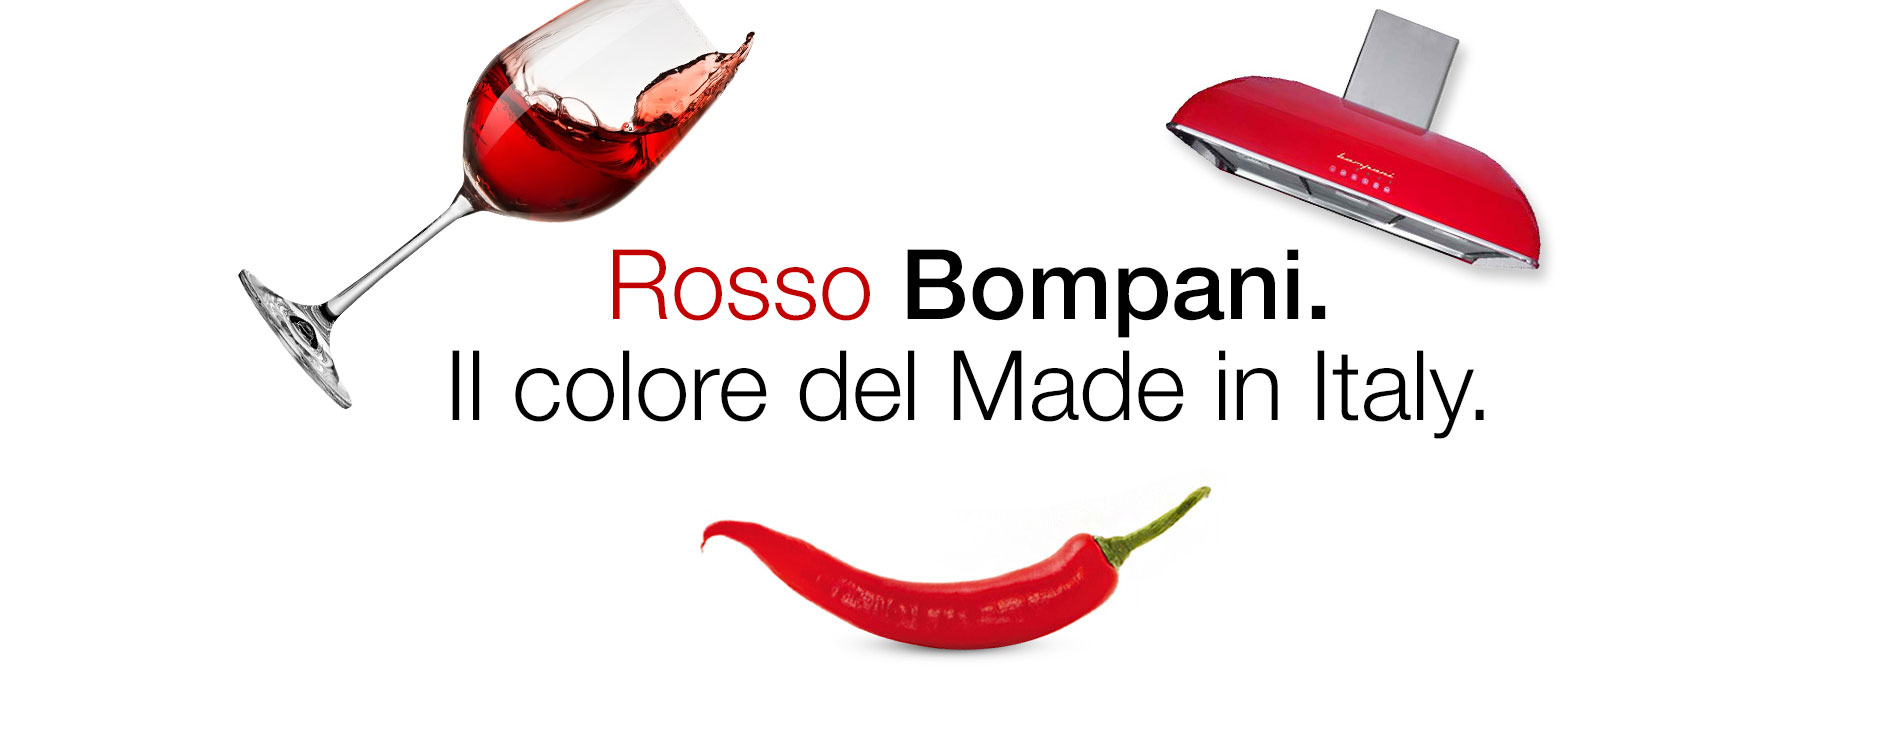 Rosso Bompani